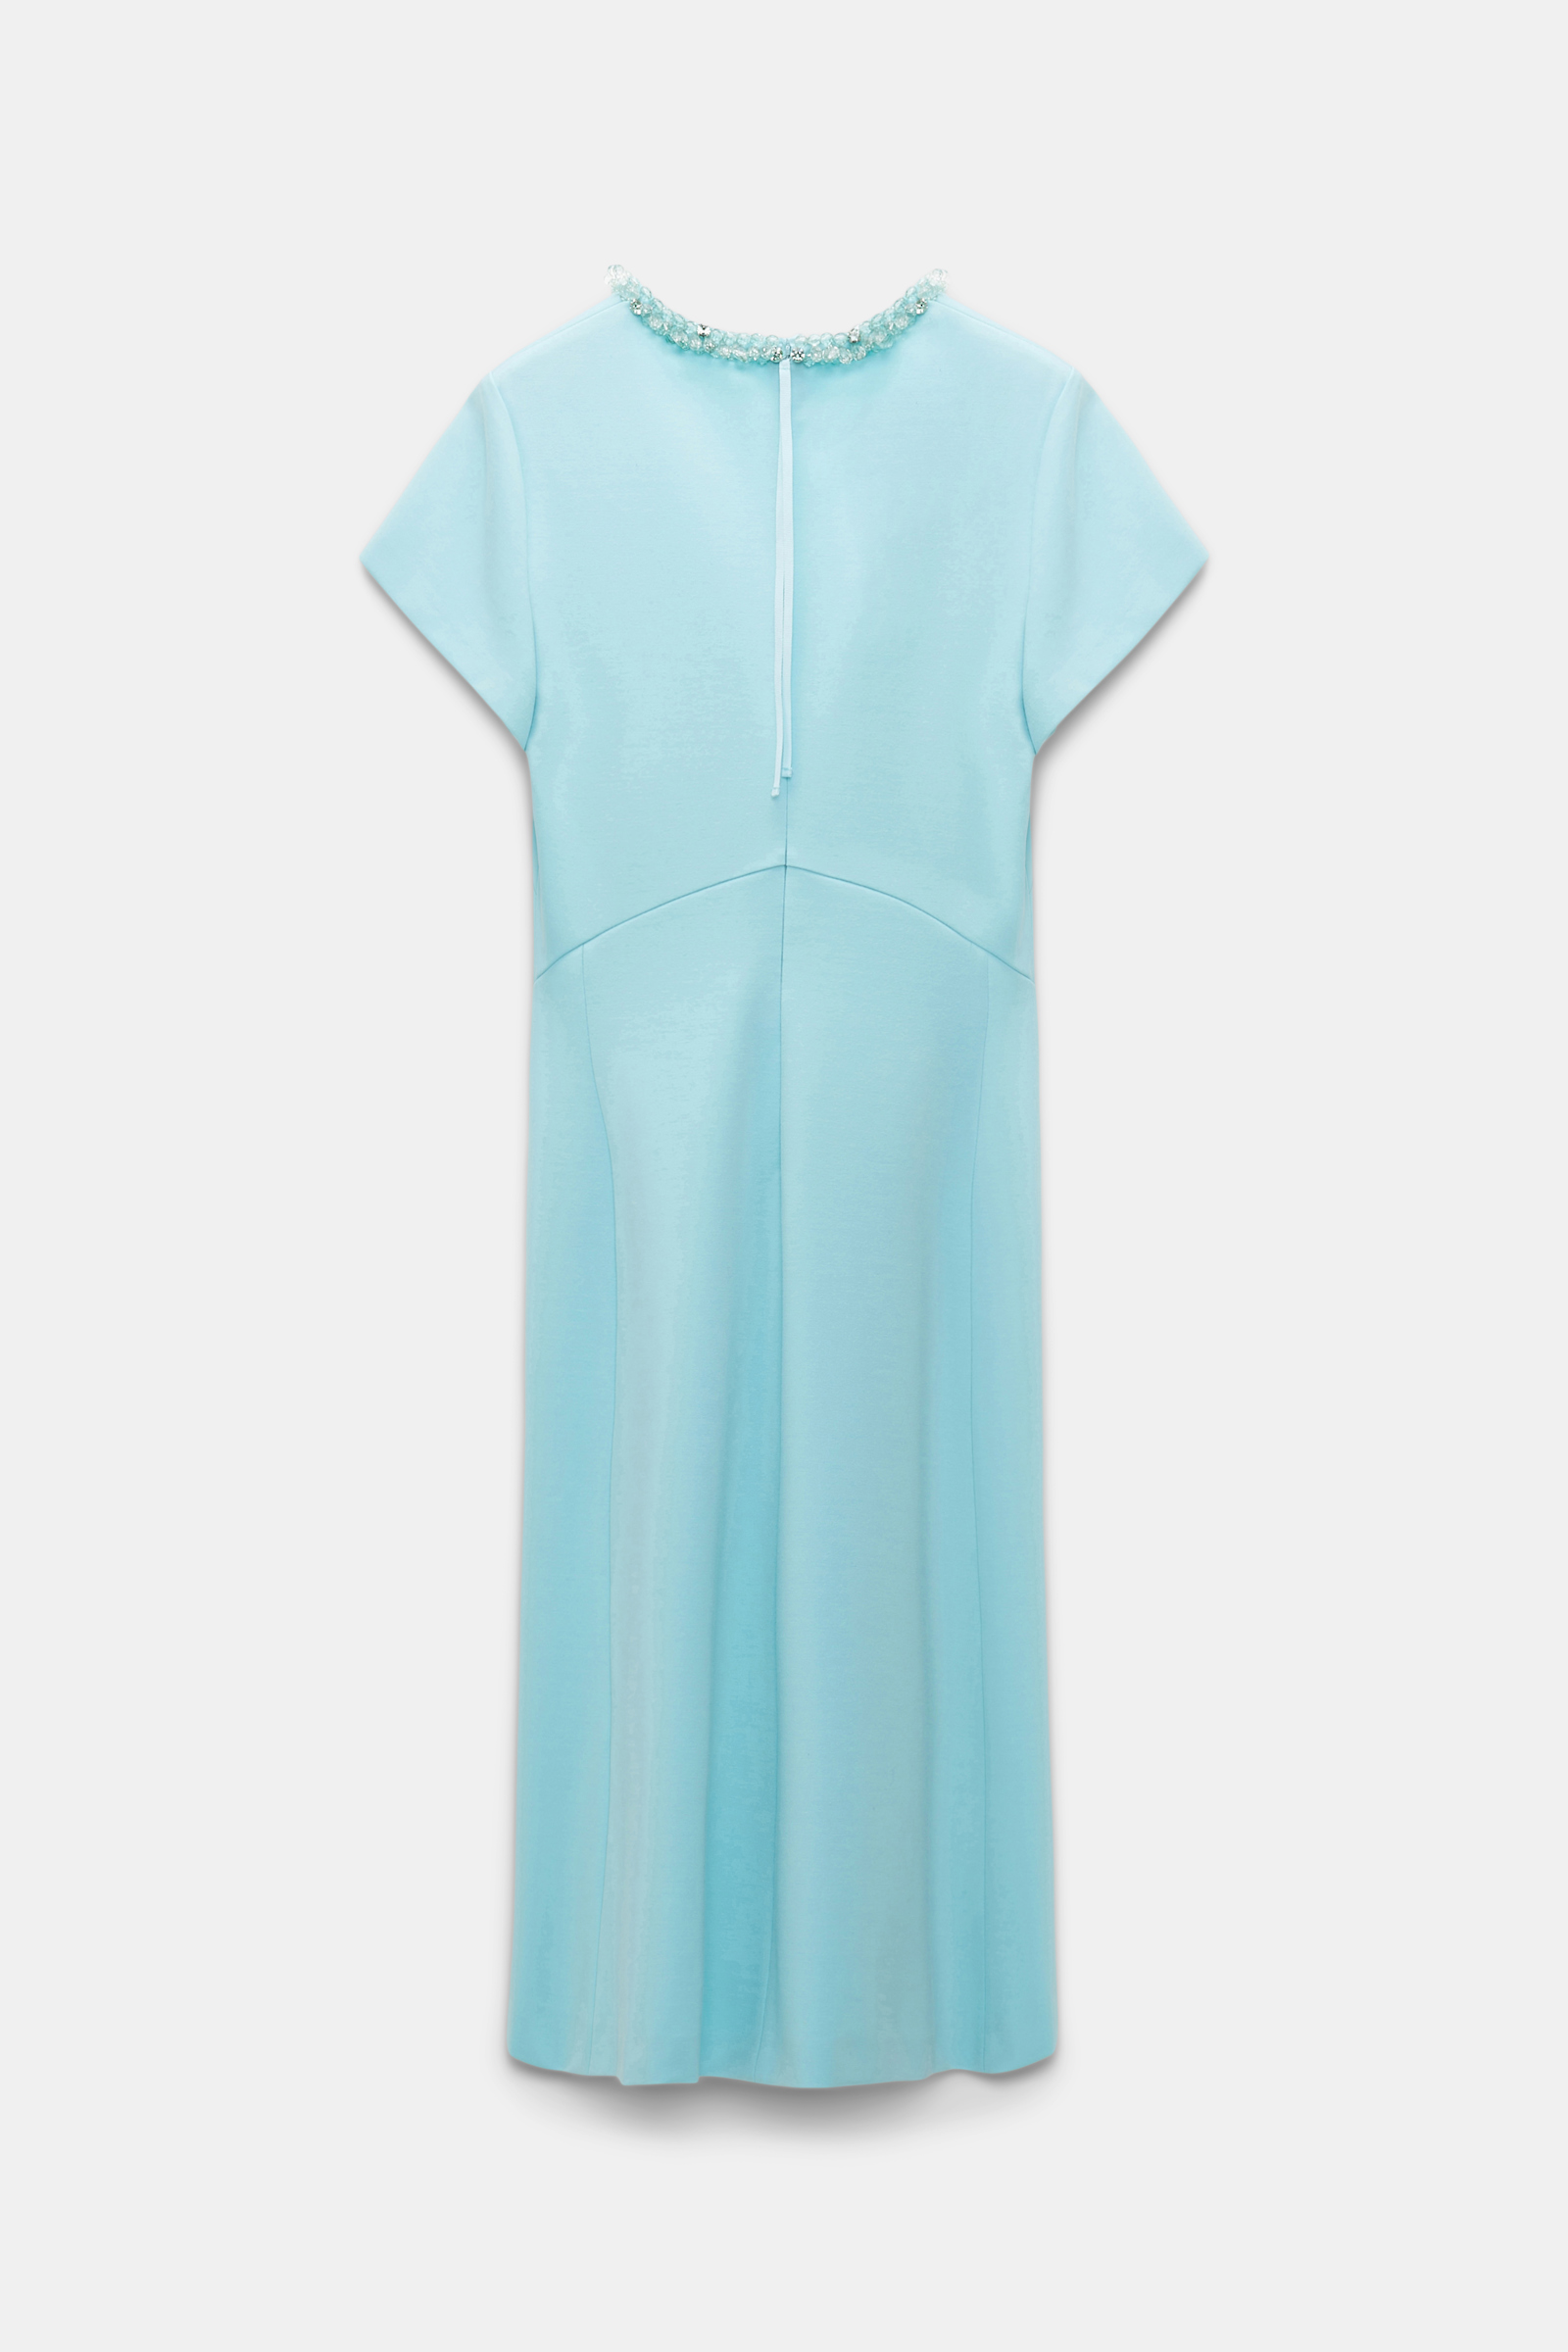 Dorothee Schumacher Kleid aus Punto Milano mit besticktem V-Ausschnitt soft turquoise